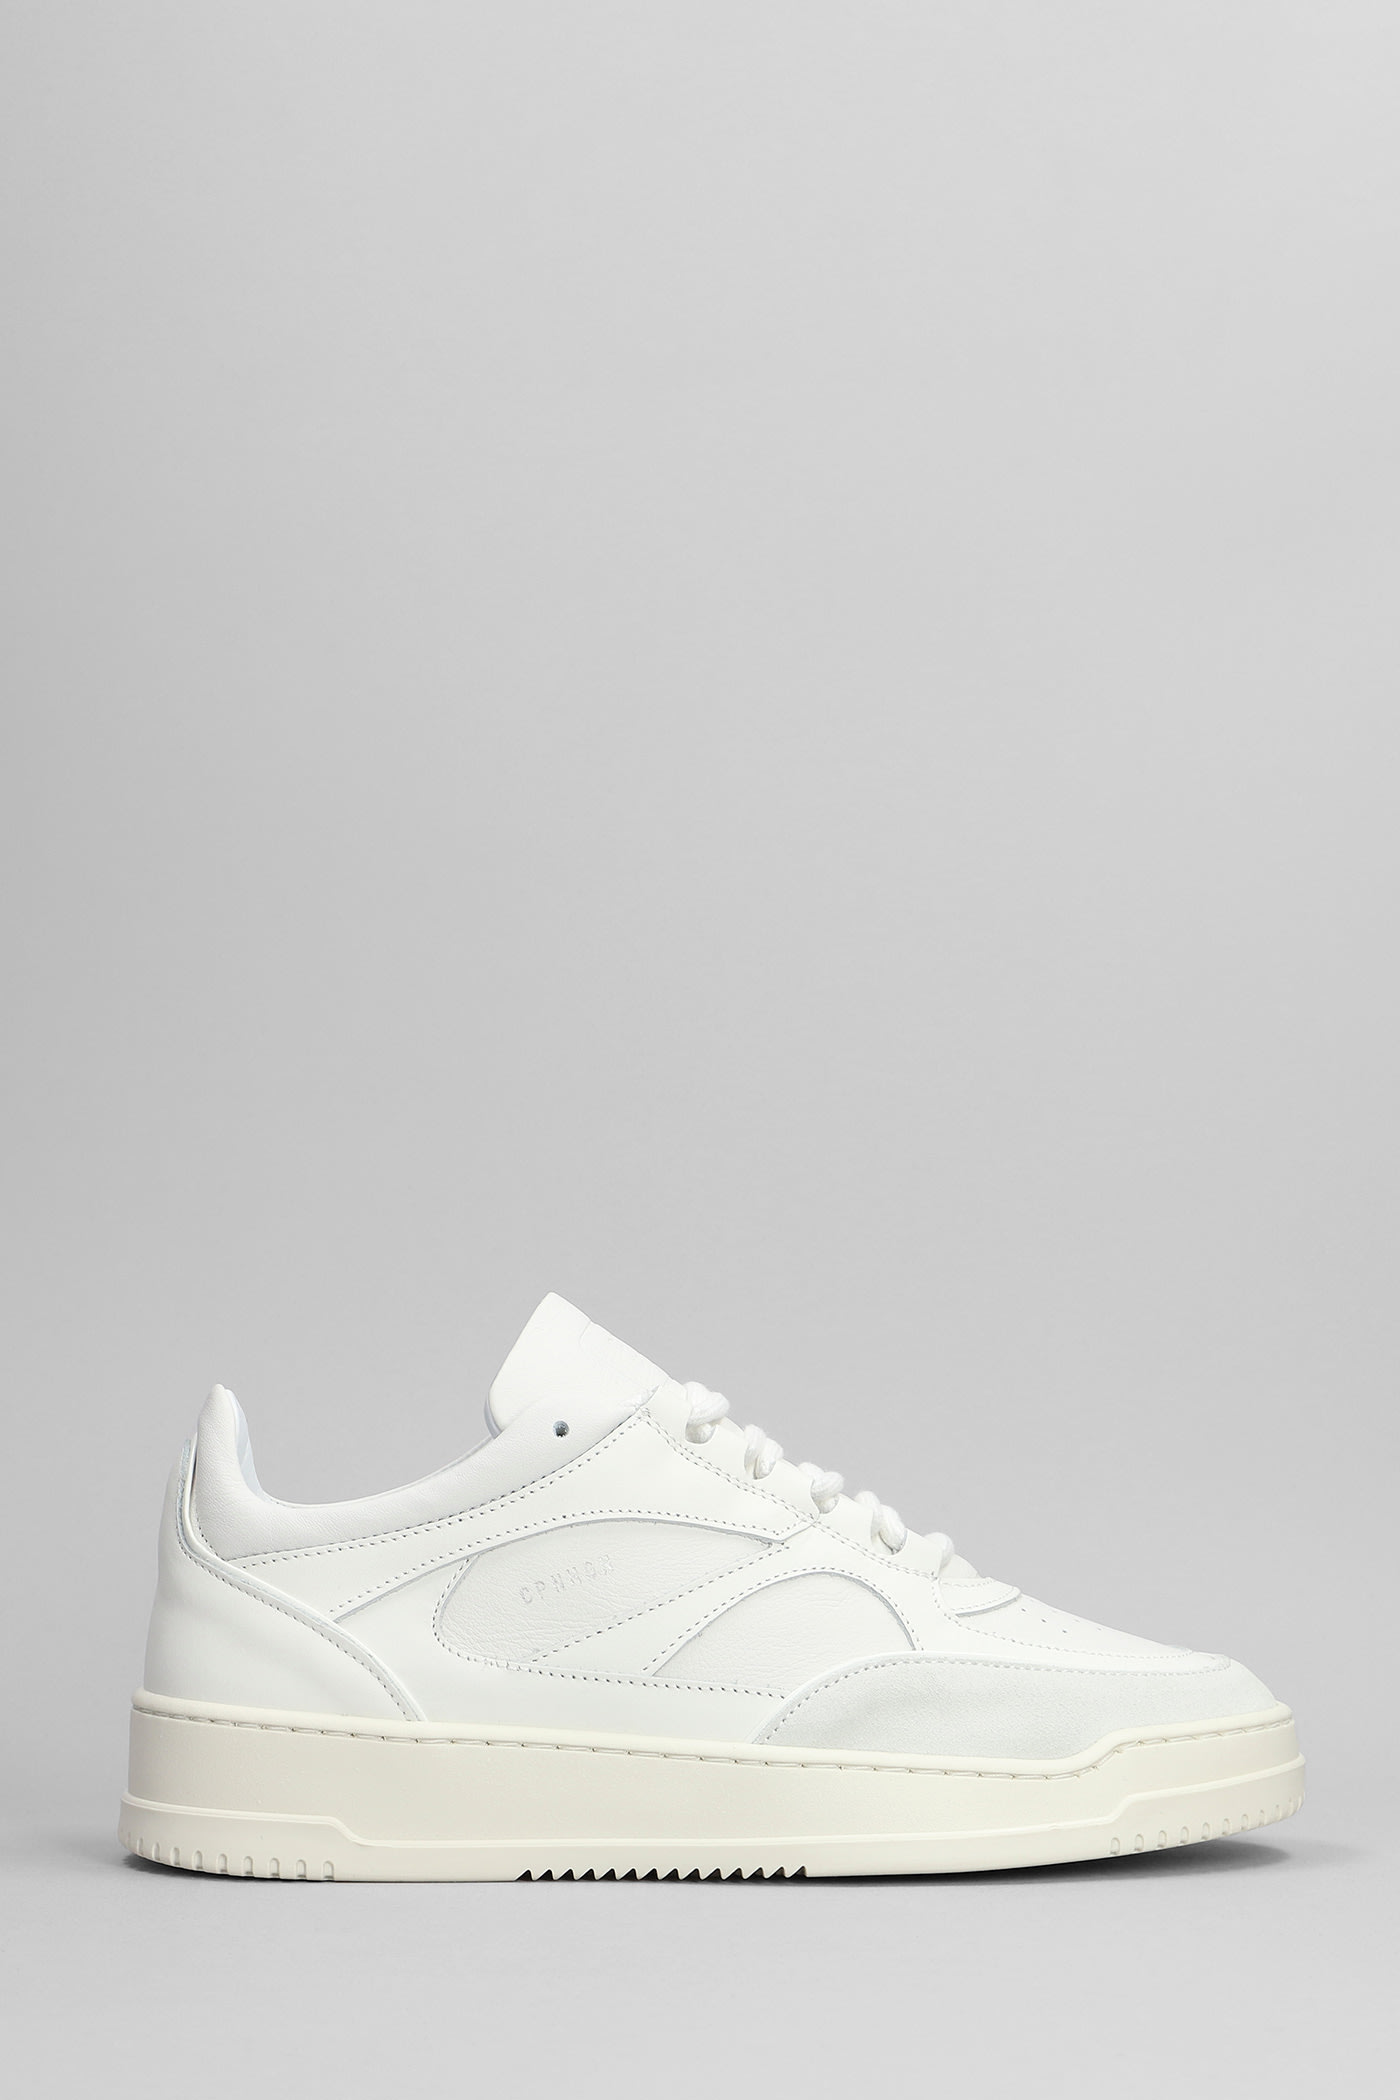 Copenhagen Sneakers In White Leather